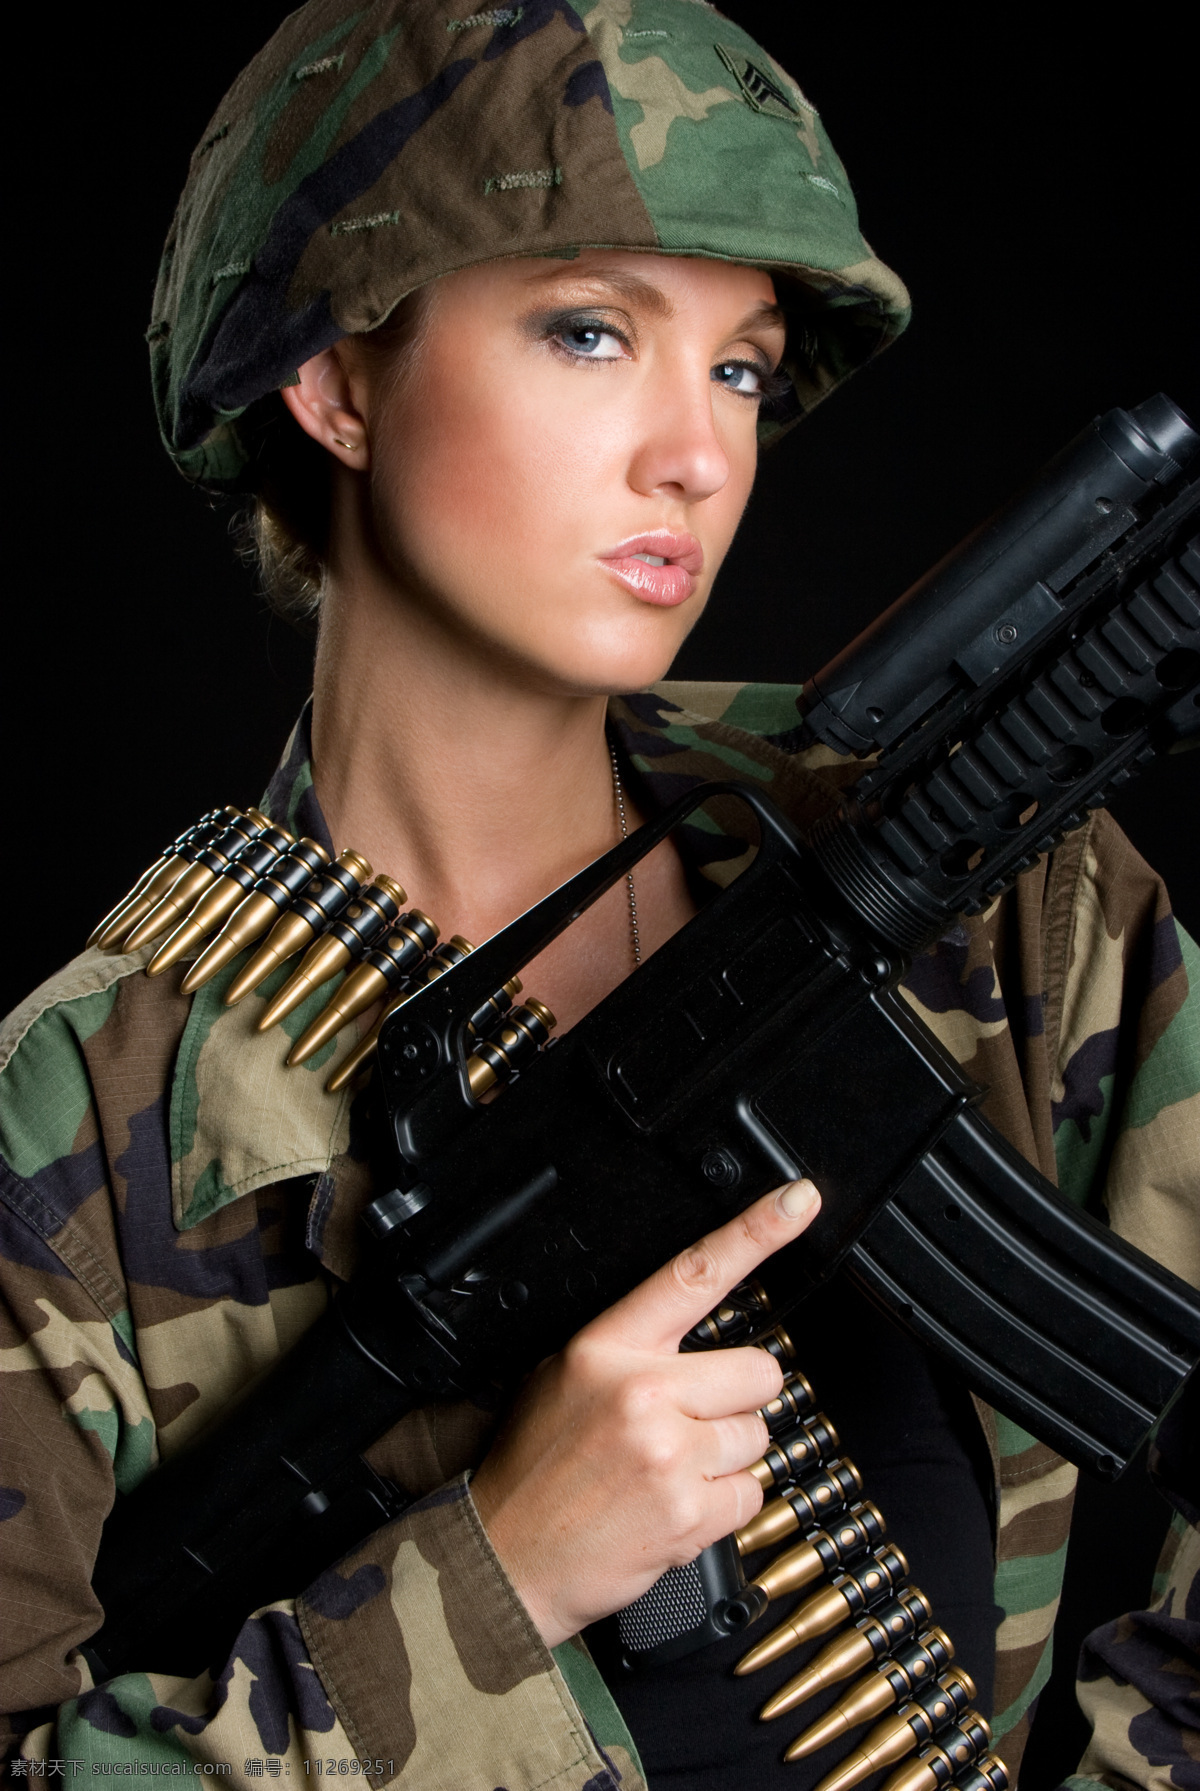 美女 军人 外国女性 女人 性感美女 时尚美女 模特 军装 女兵 枪 子弹 武器 美女图片 人物图片